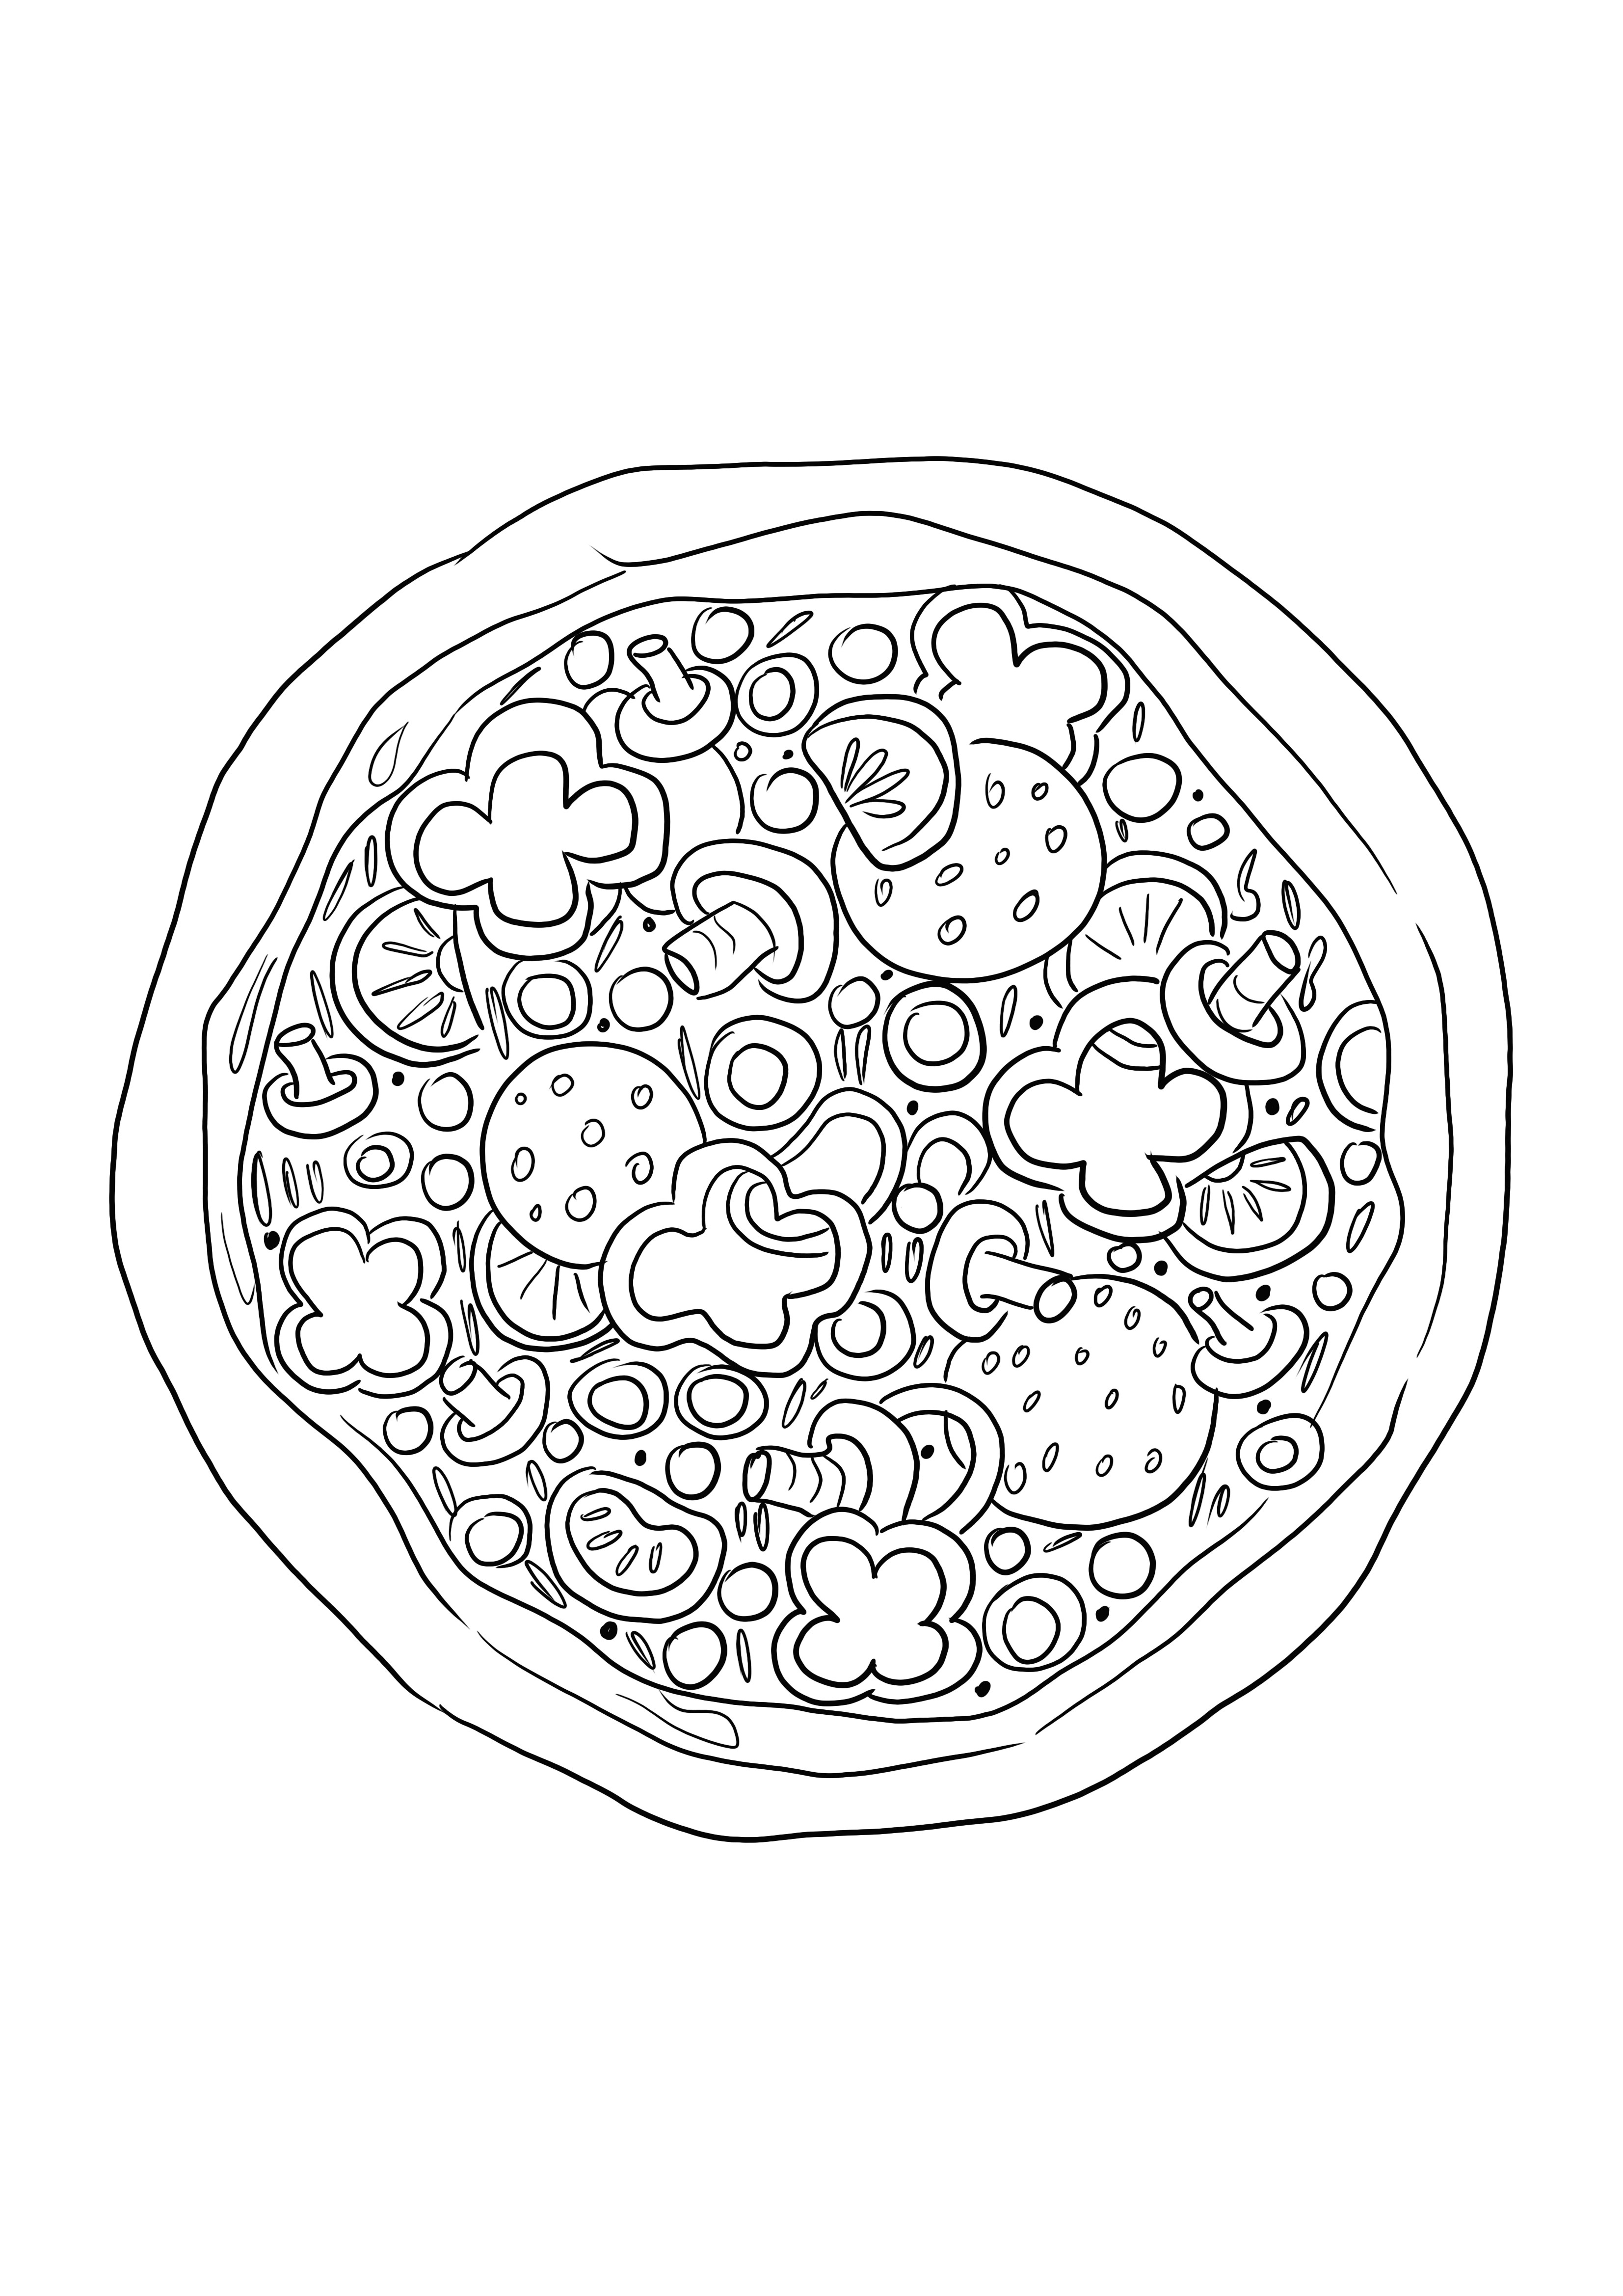 Kolorowanka z pizzą dla dzieci do łatwego kolorowania i nauki o jedzeniu